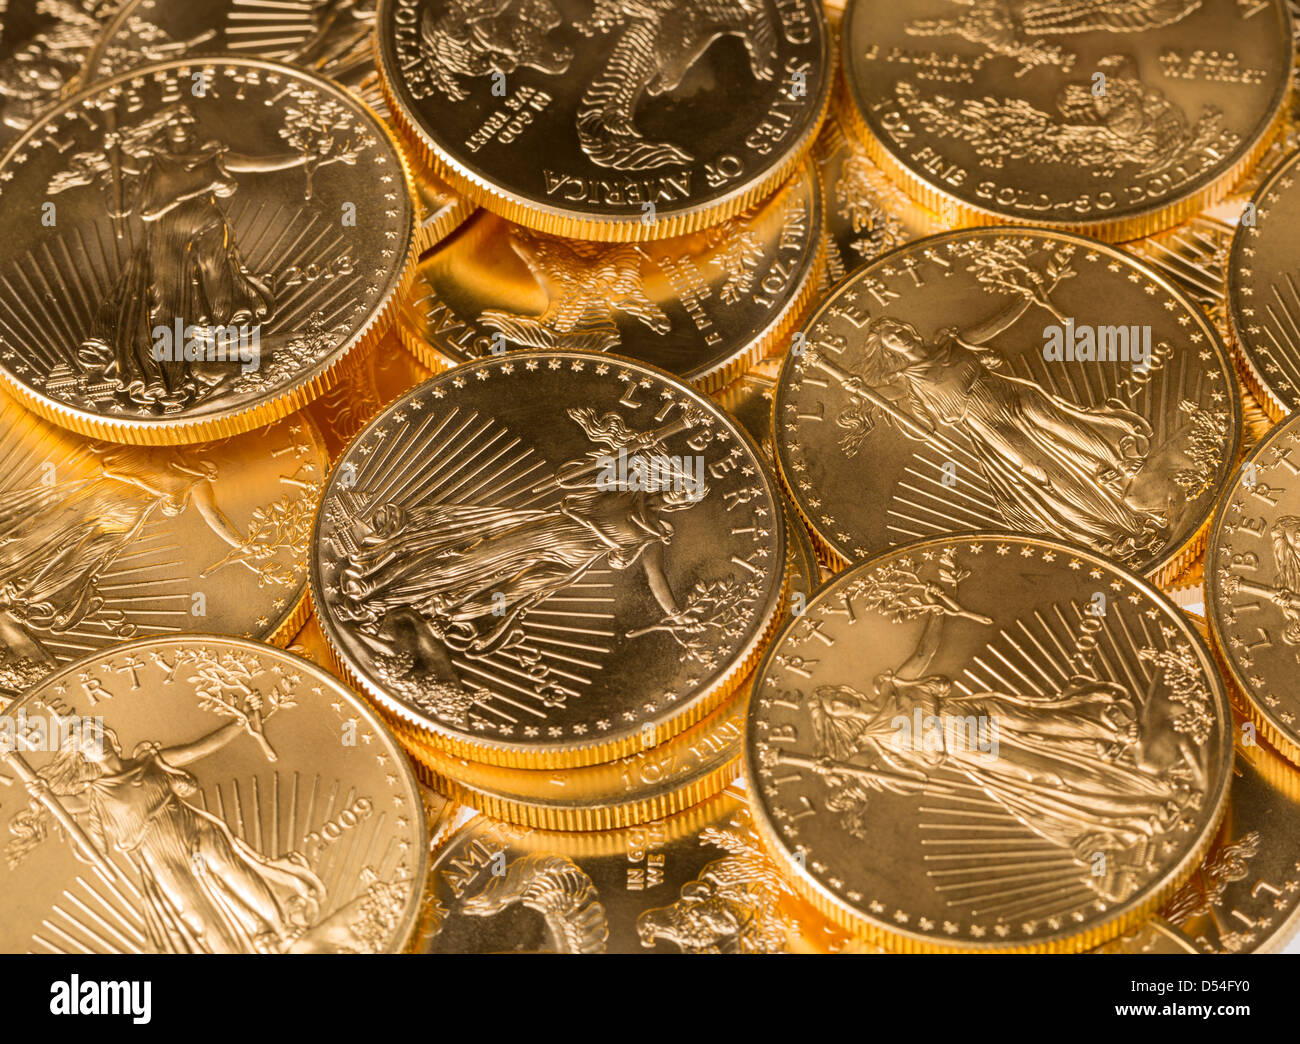 Stapel von Gold eagle eine Feinunze Gold Münzen vom US-Finanzministerium Minze Stockfoto